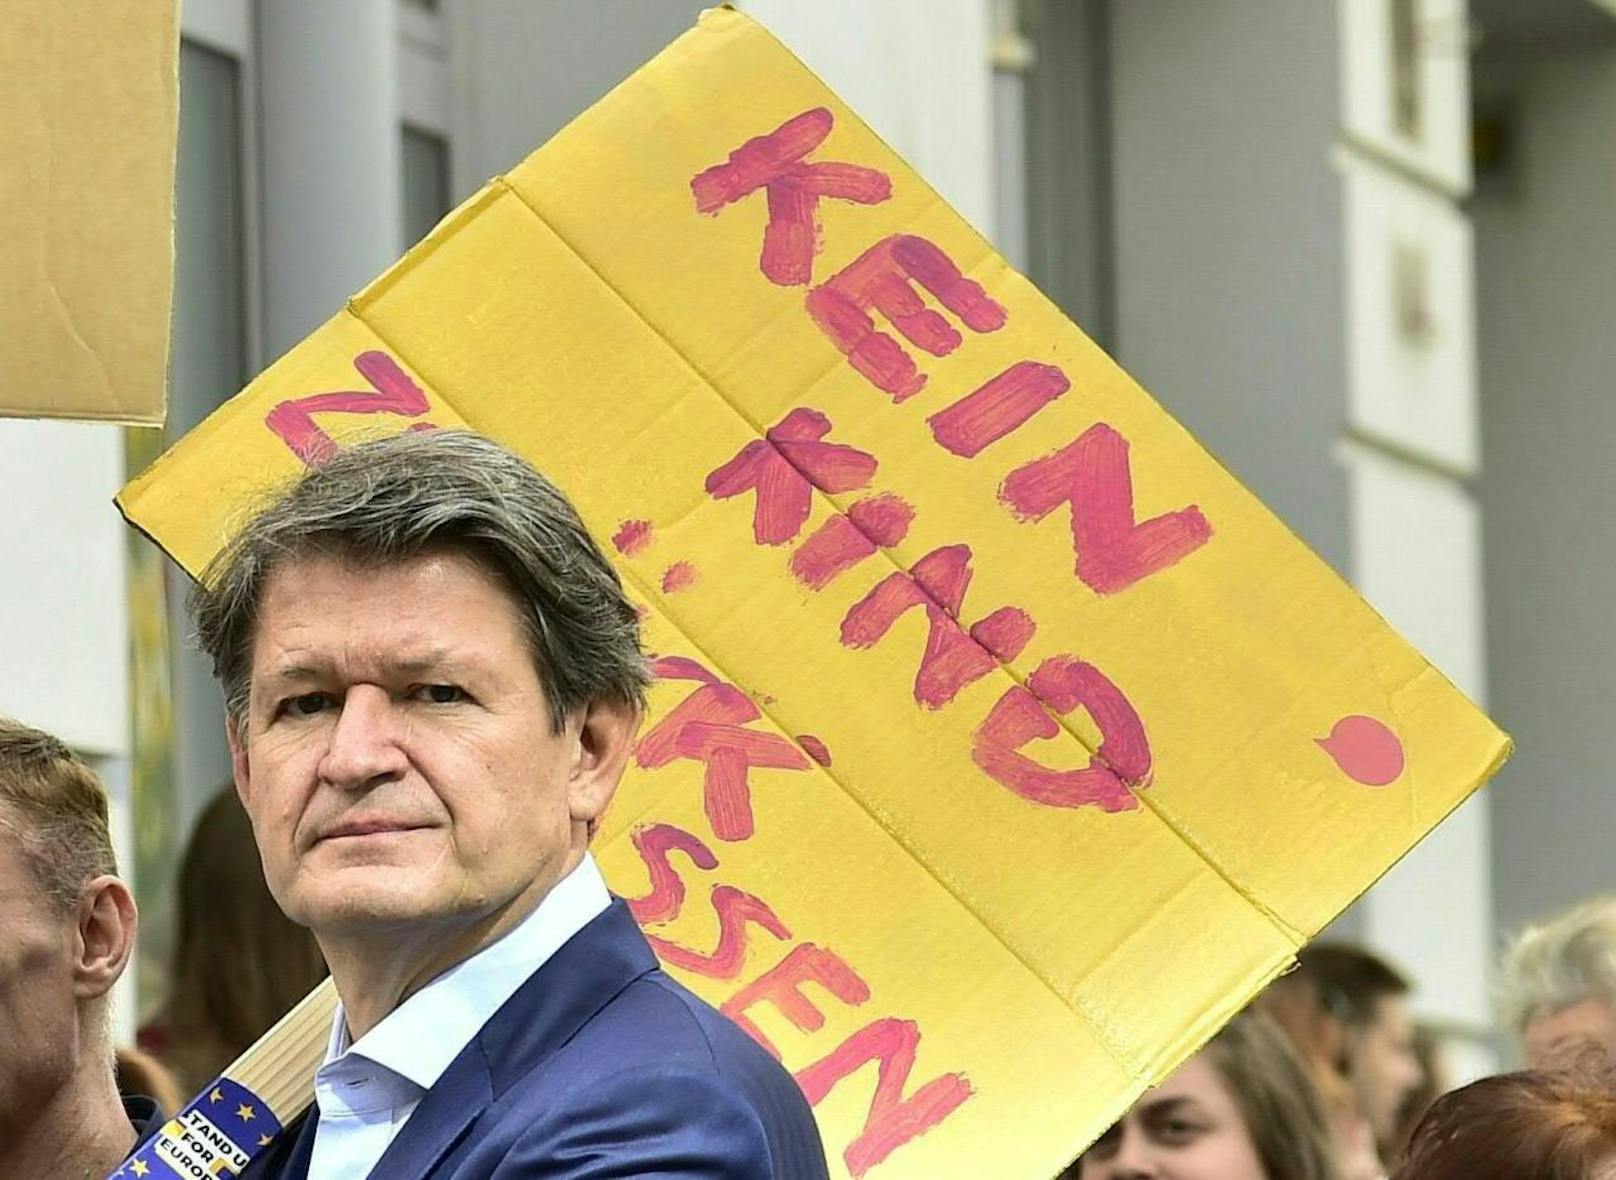 NEOS-Kandidat Helmut Brandstätter während des "Earth Strike"-Klimaprotests in Wien